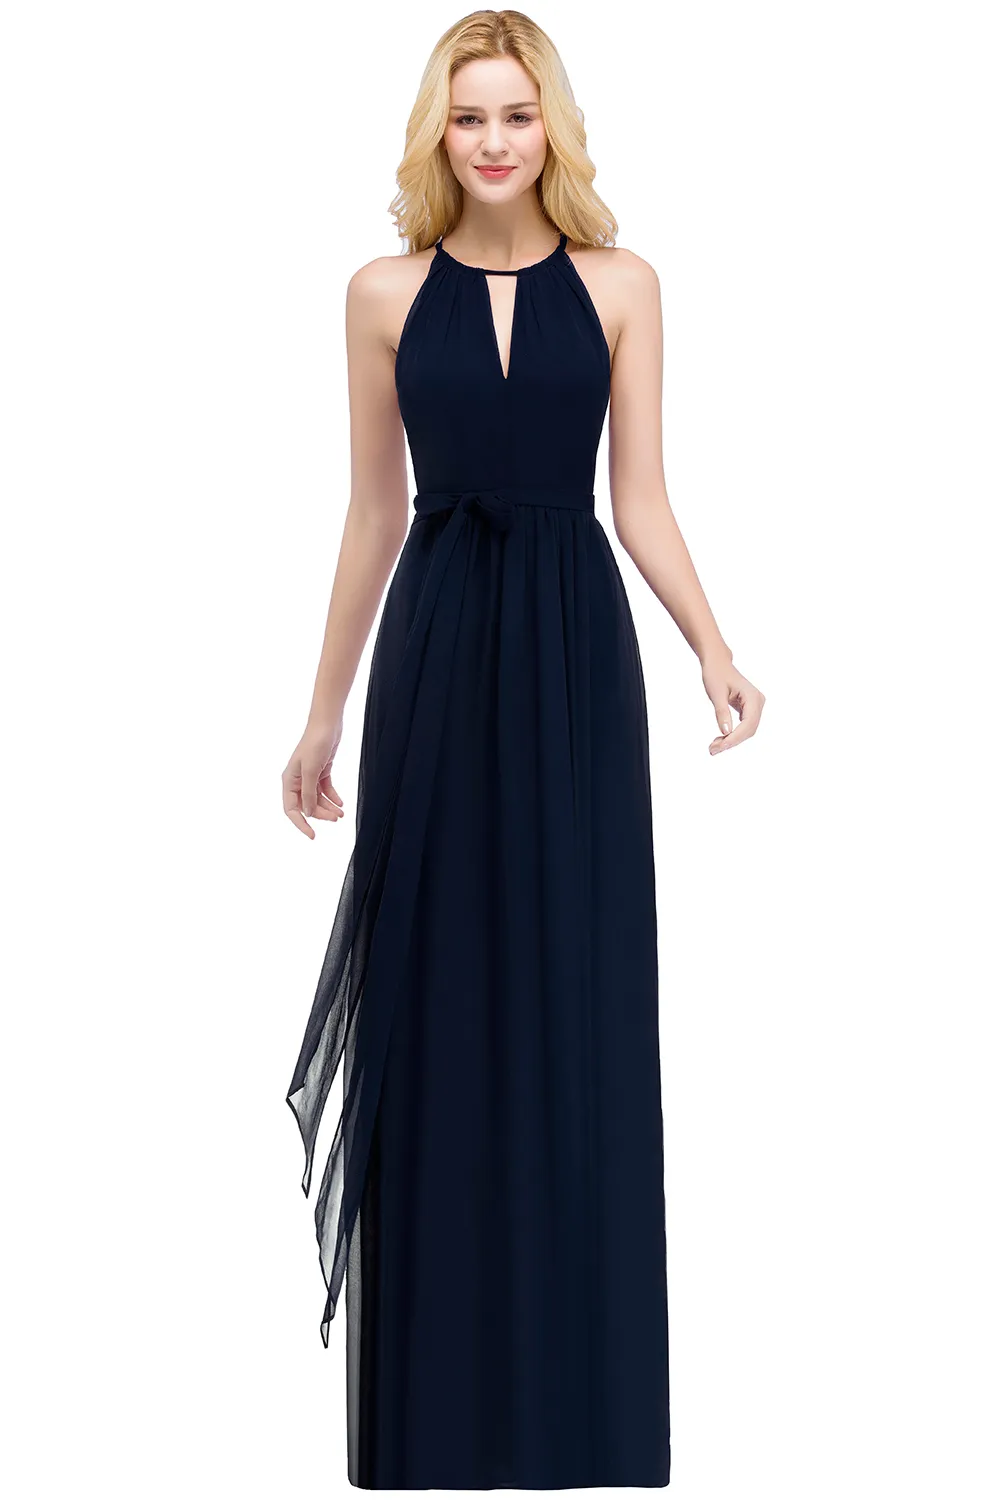 Сток элегантные вечерние платья Halter Бургундия темно-синий синий длинный линейный шифон дремон платья формальный платье Party CPS868